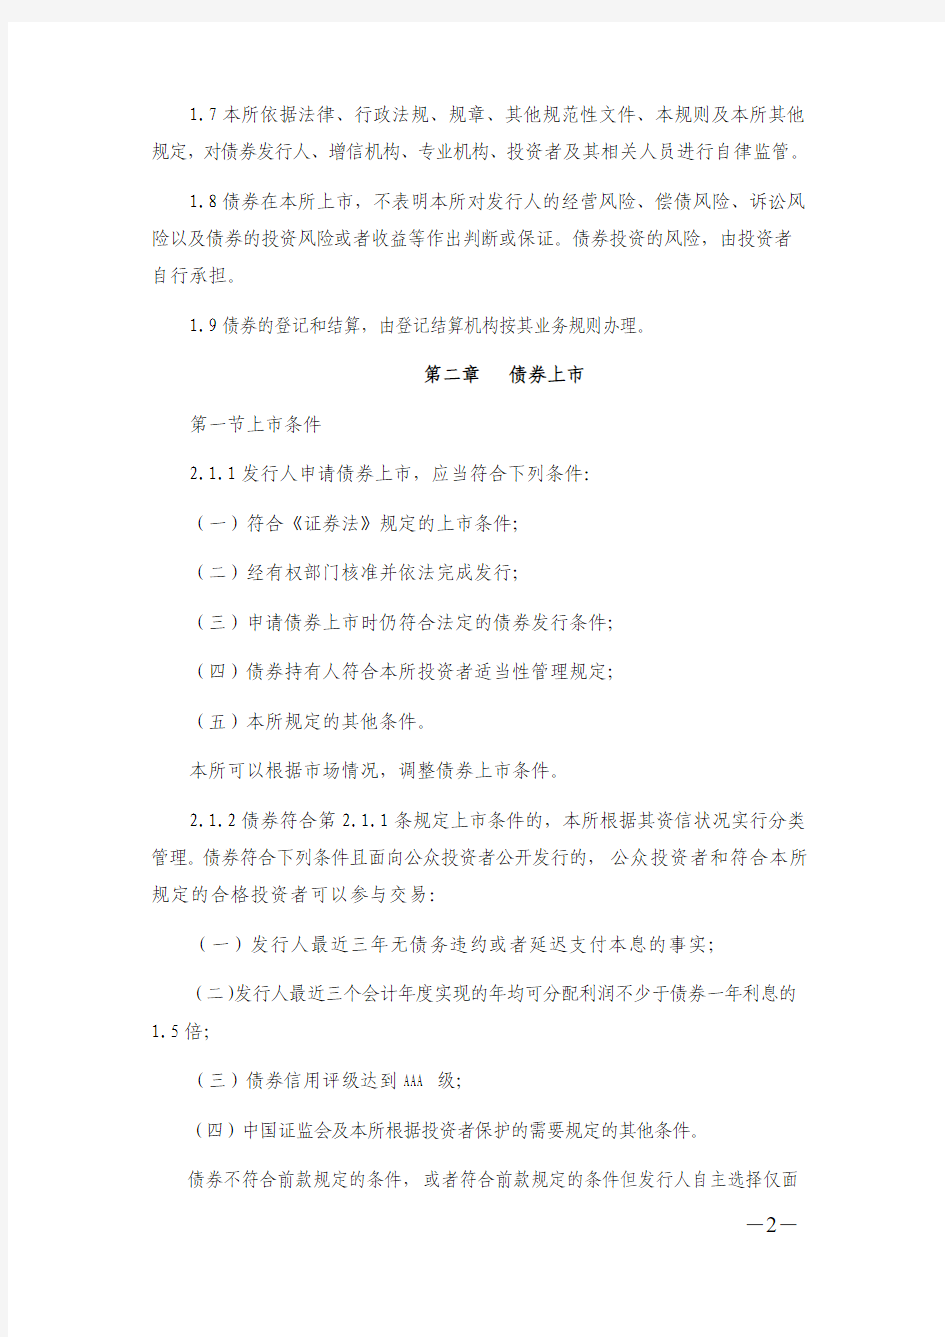 上海证券交易所公司债券上市规则(2015最终修订版)